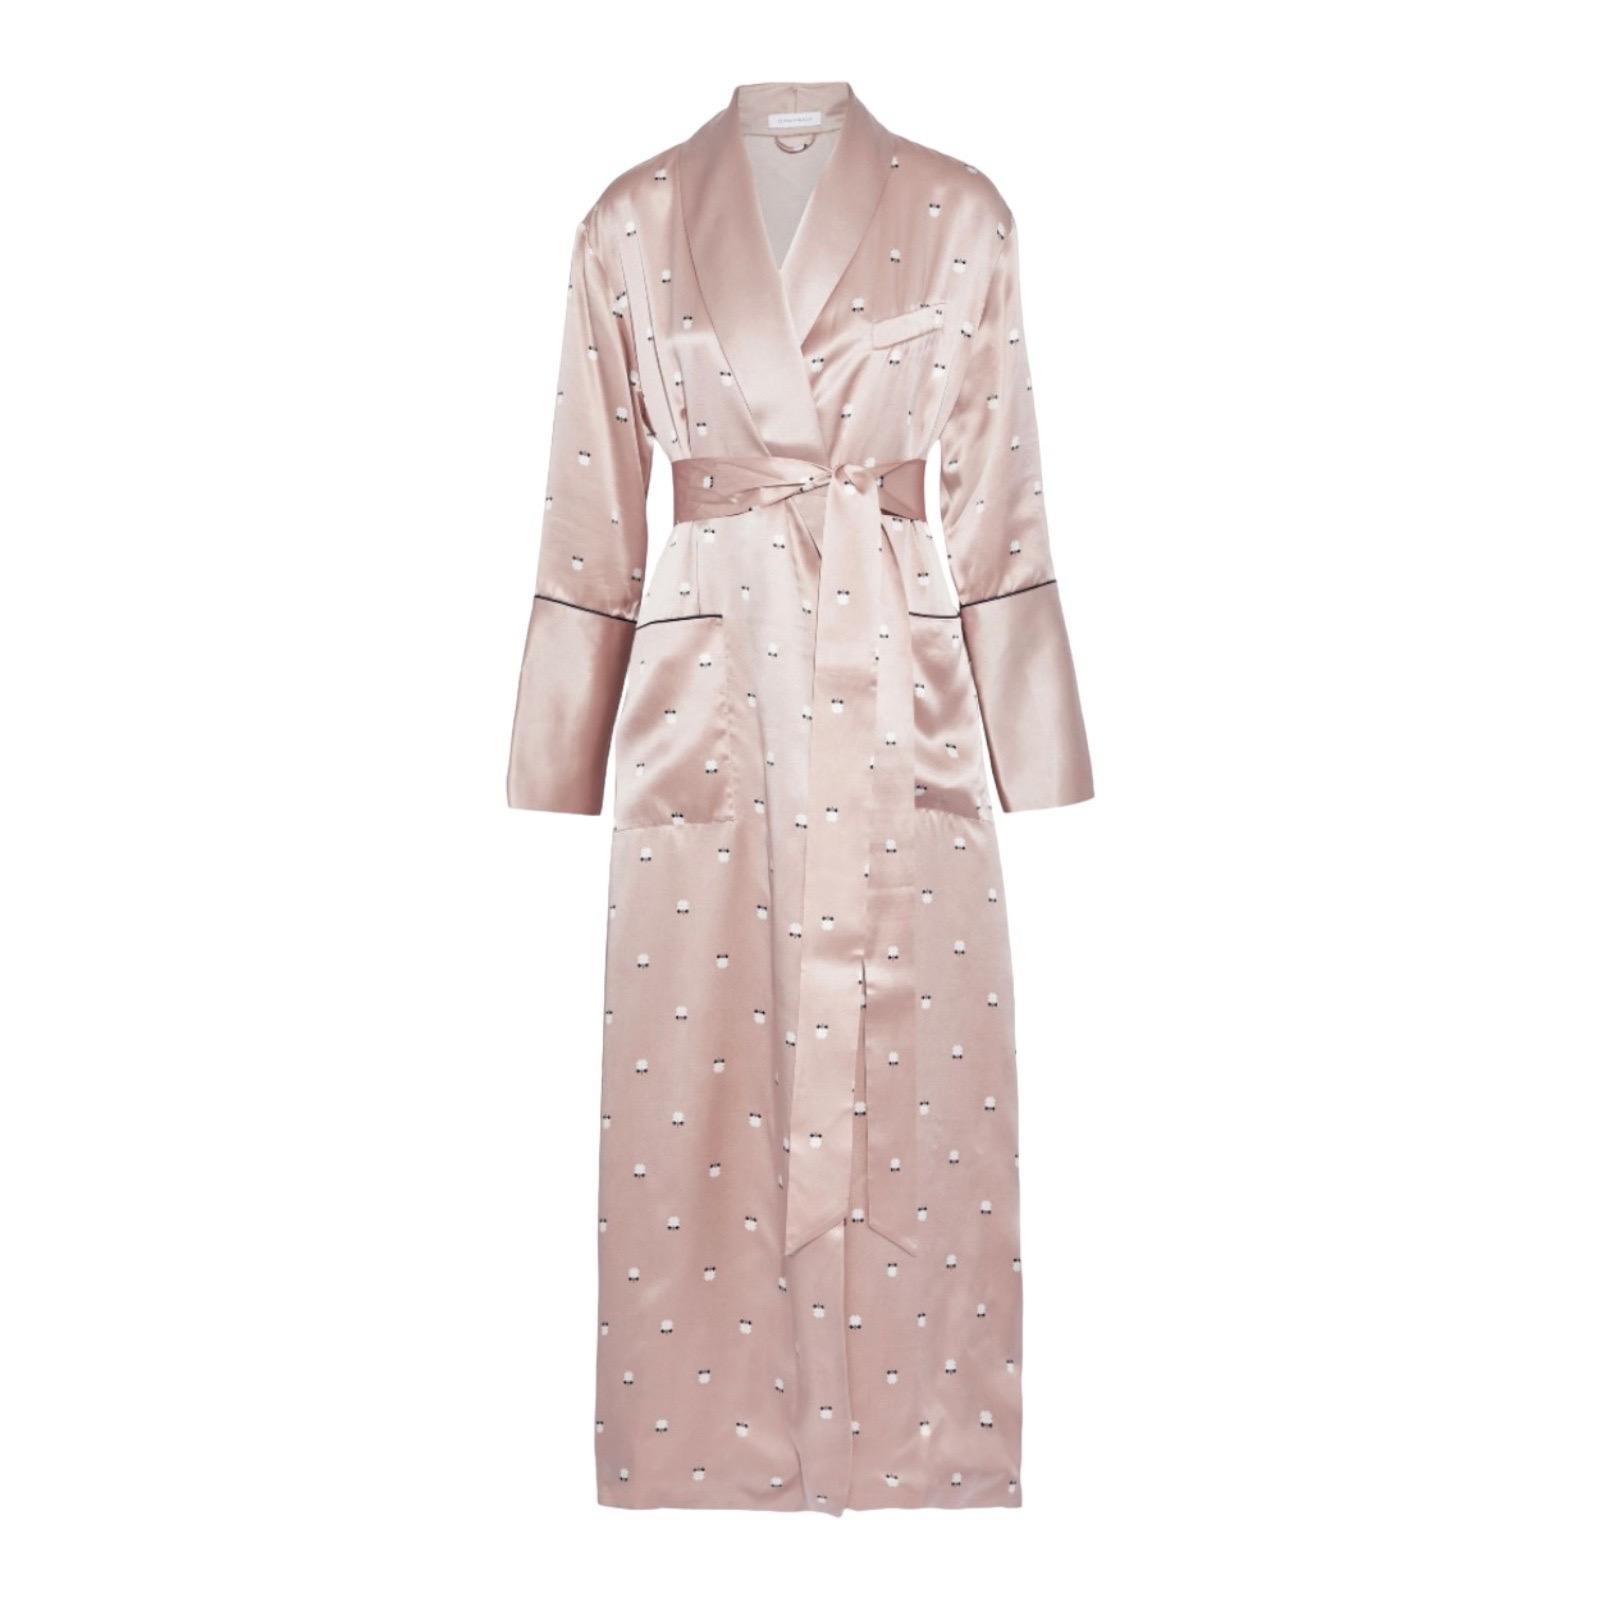 NEU Olivia von Halle Blush Pink Bedrucktes Seidenkleid aus Seide Robe M/L im Angebot